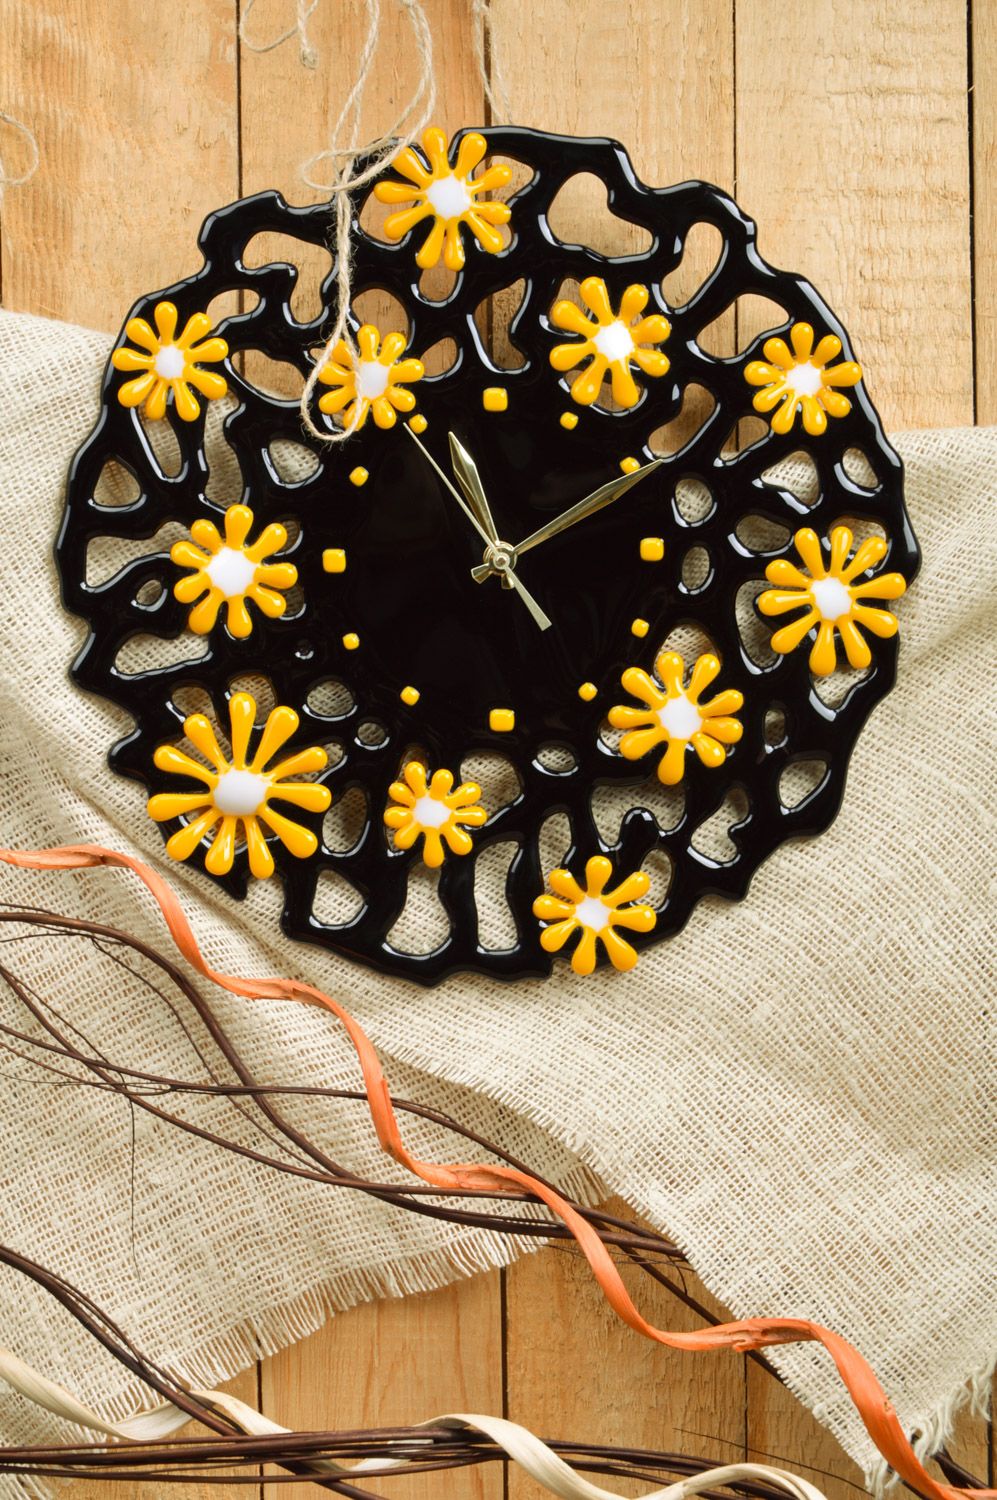 Часы из стекла фьюзинг черные в желтый цветочек круглые необычные ручная работа фото 1